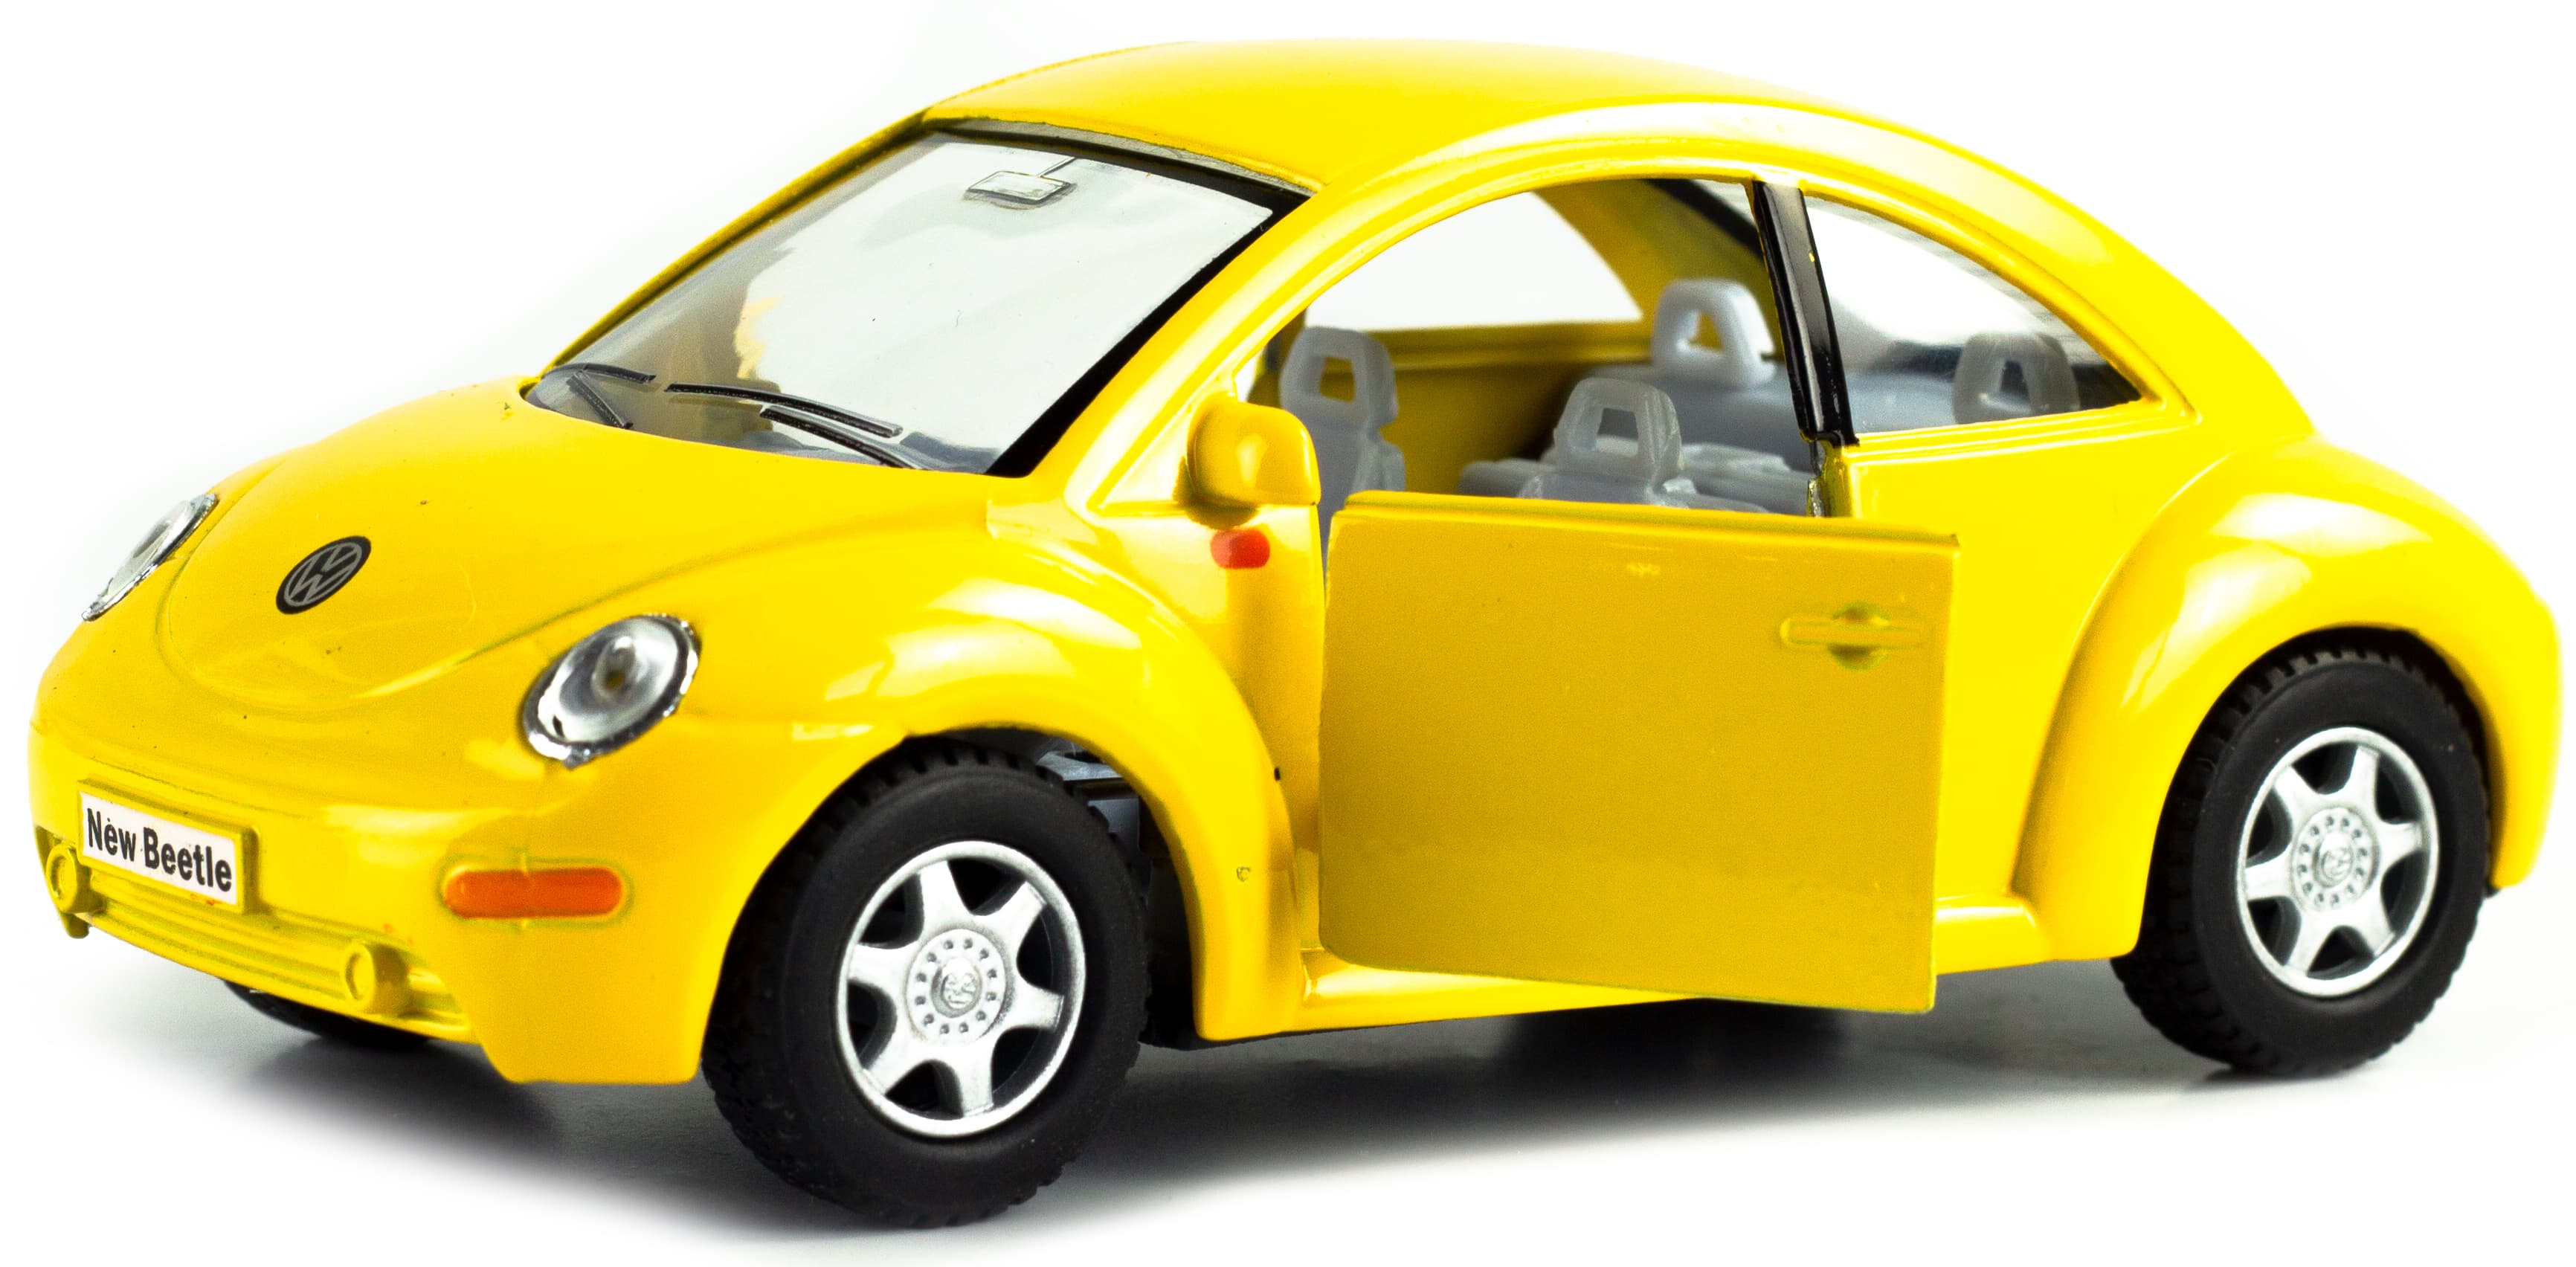 Металлическая машинка Kinsmart 1:32 «Volkswagen Beetle New» KT5028D, инерционная / Желтый